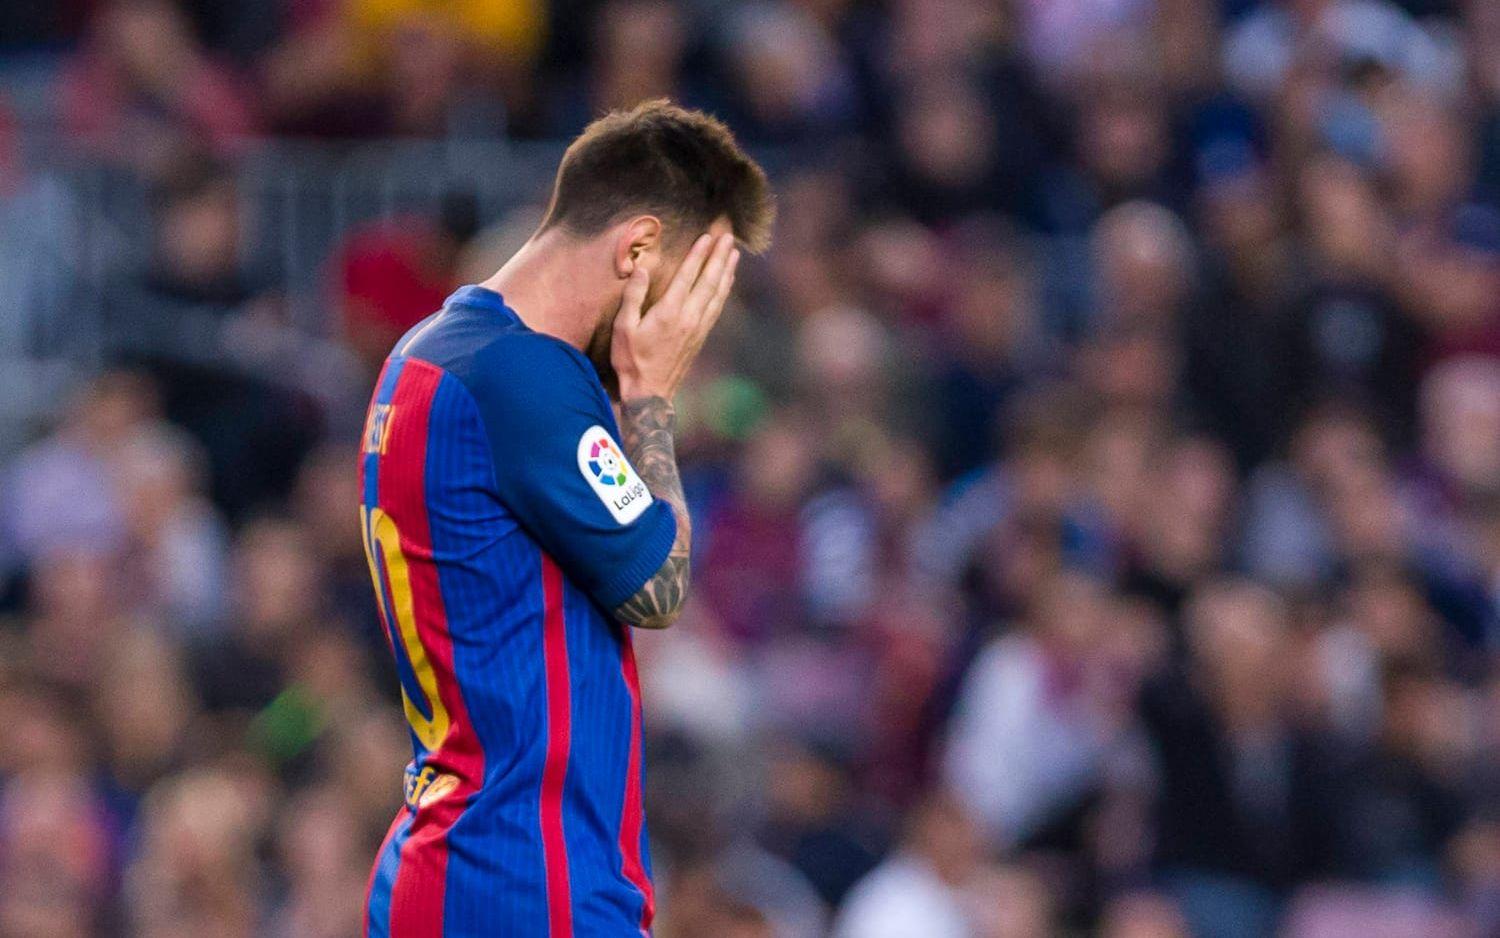 Leo Messi tvingas betala miljoner i böter för skattebrott. Bild: Bildbyrån.
